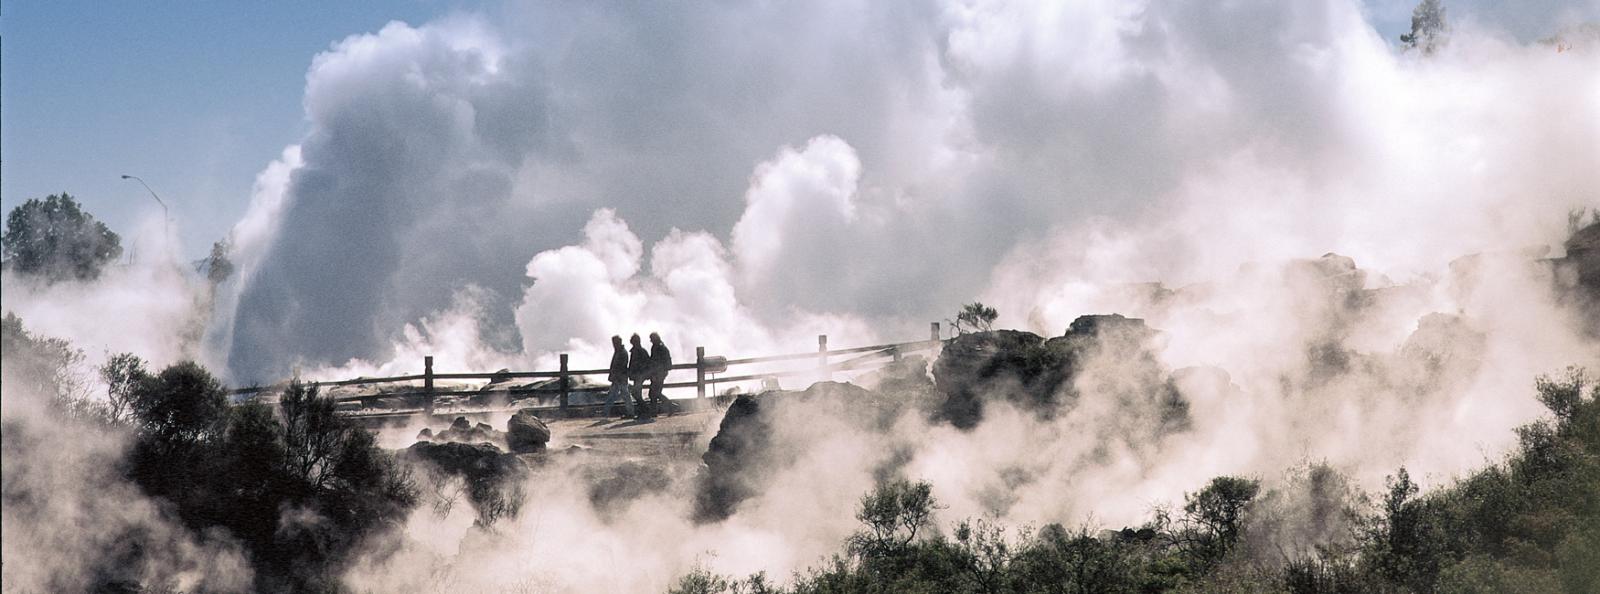 steaming Vents Rotorua